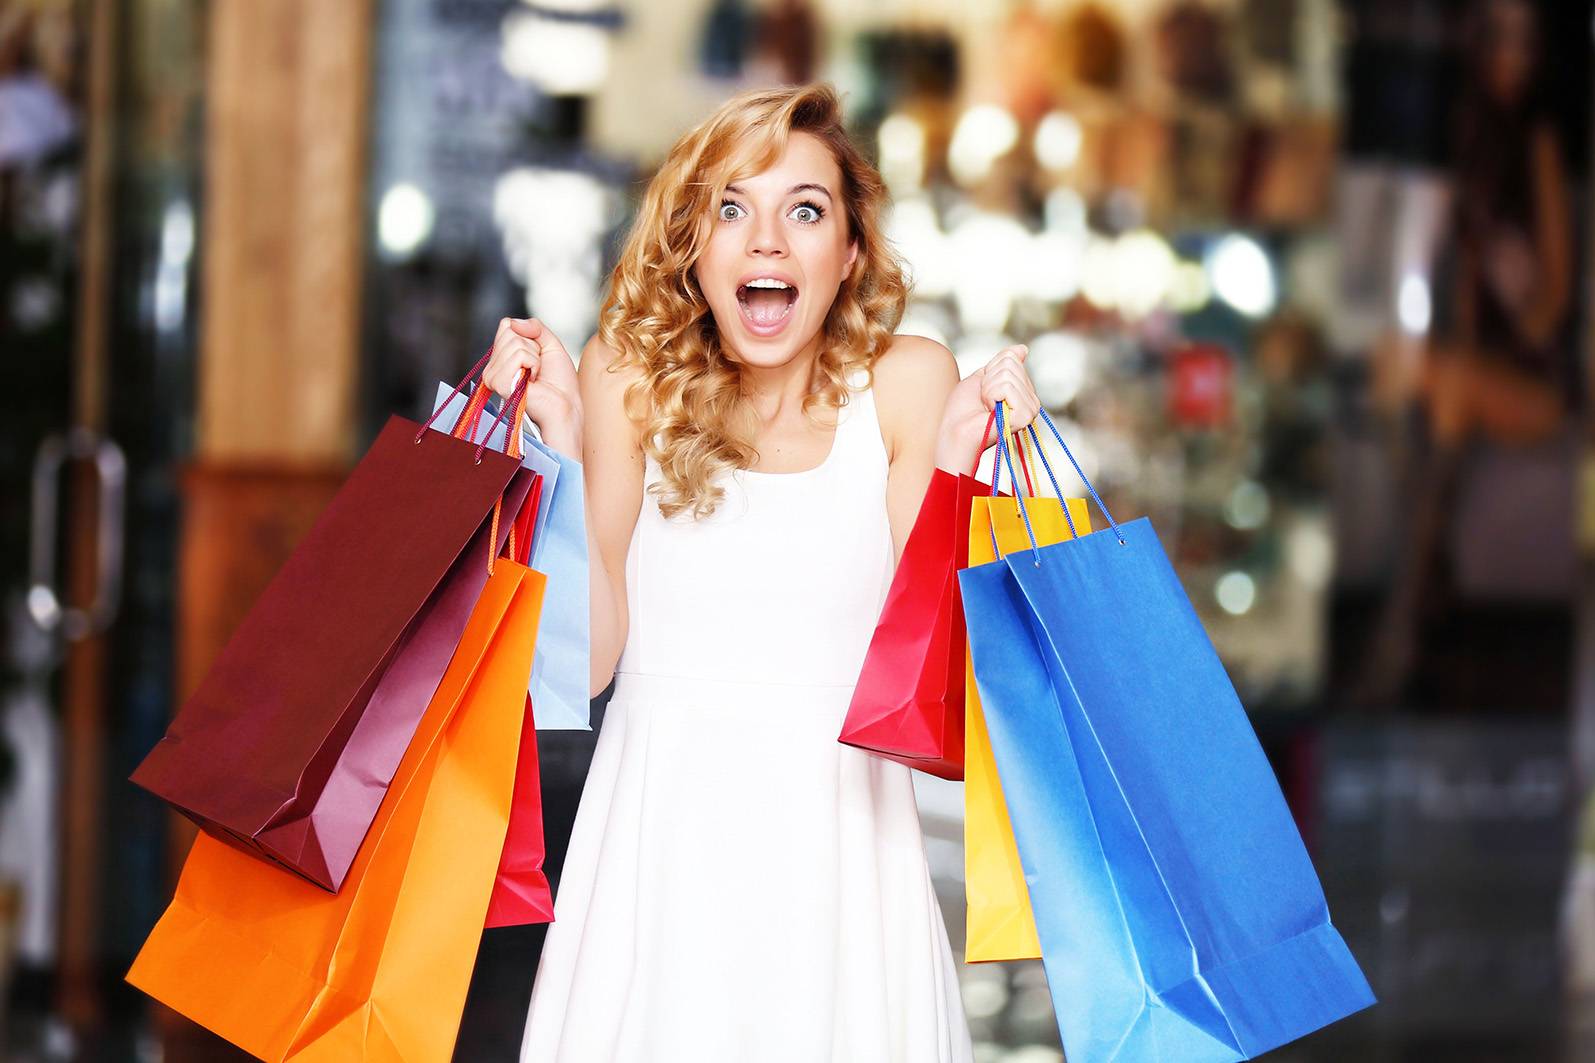 Как покупать одежду в интернет-магазинах: полезные советы
как покупать одежду в интернет-магазинах: полезные советы